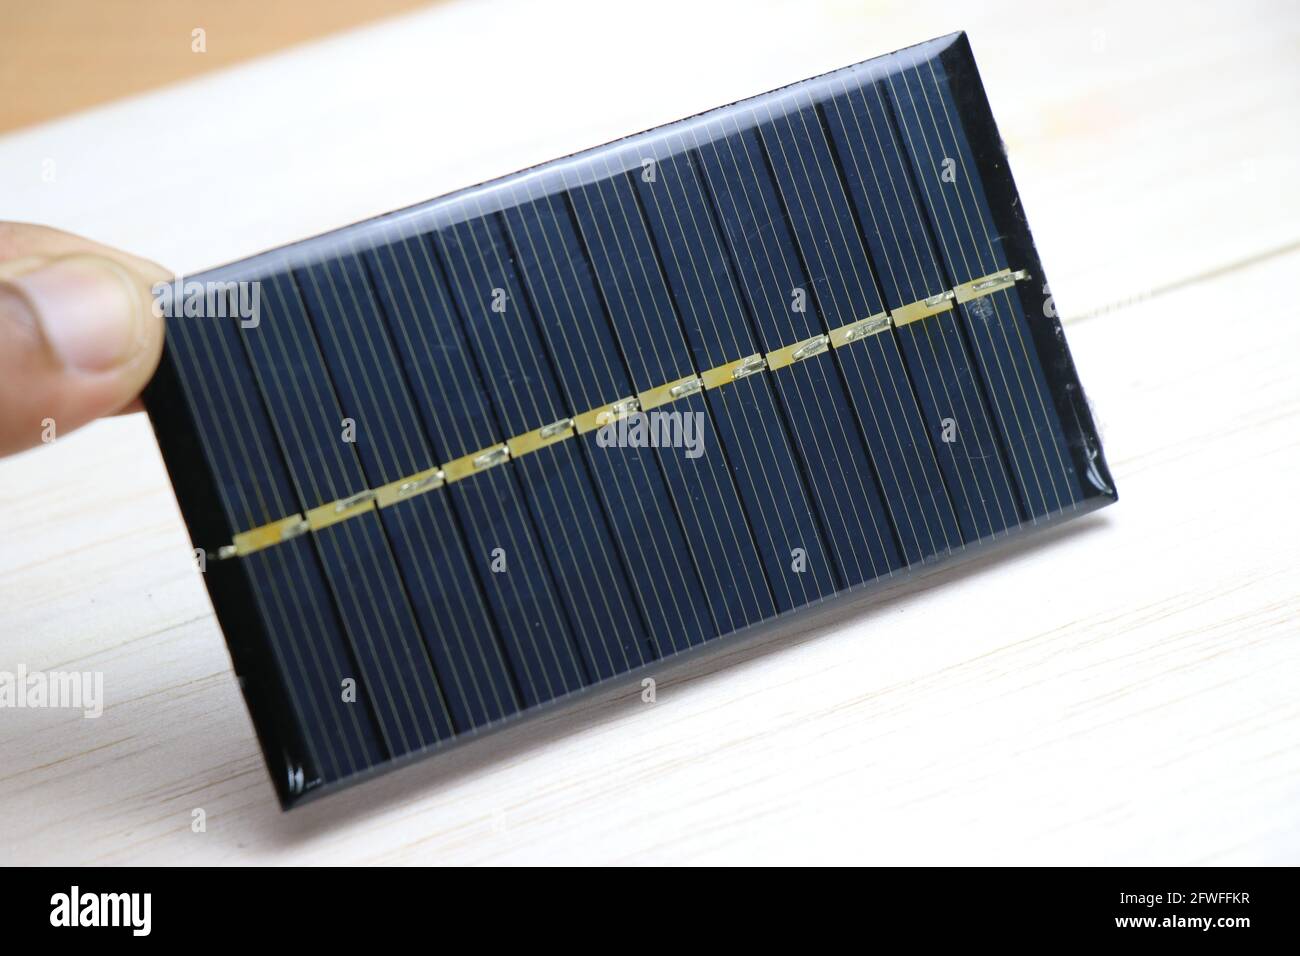 Mini cella solare immagini e fotografie stock ad alta risoluzione - Alamy